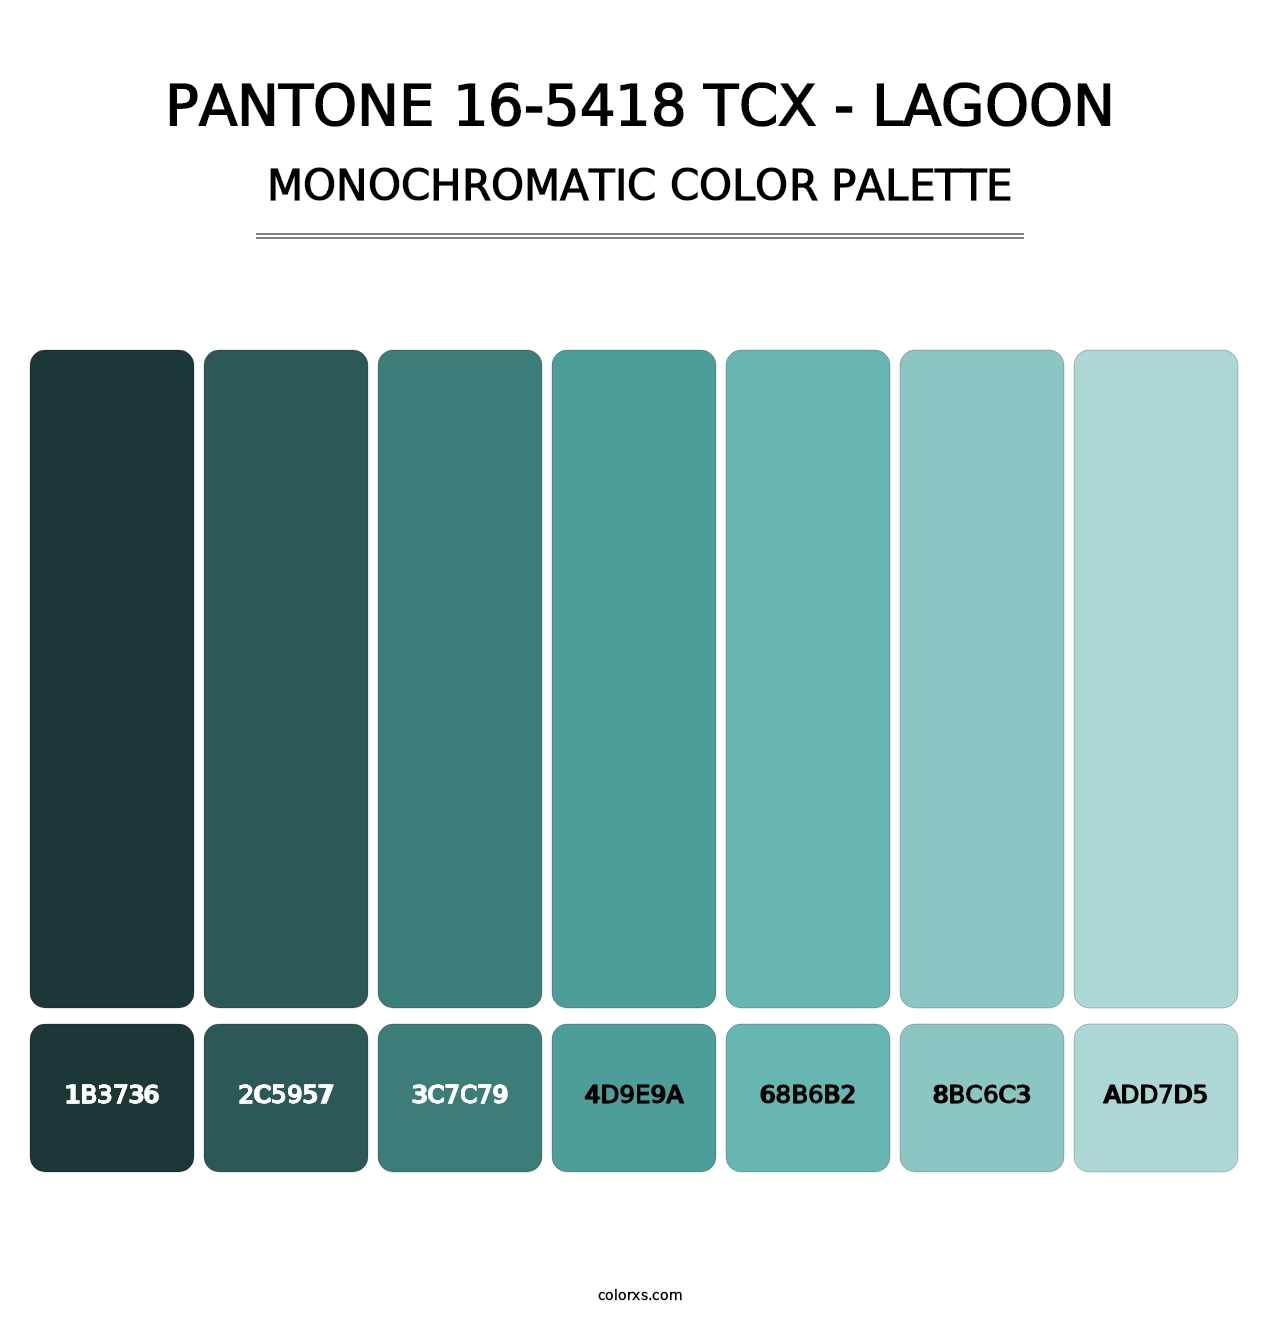 PANTONE 16-5418 TCX - Lagoon - Monochromatic Color Palette